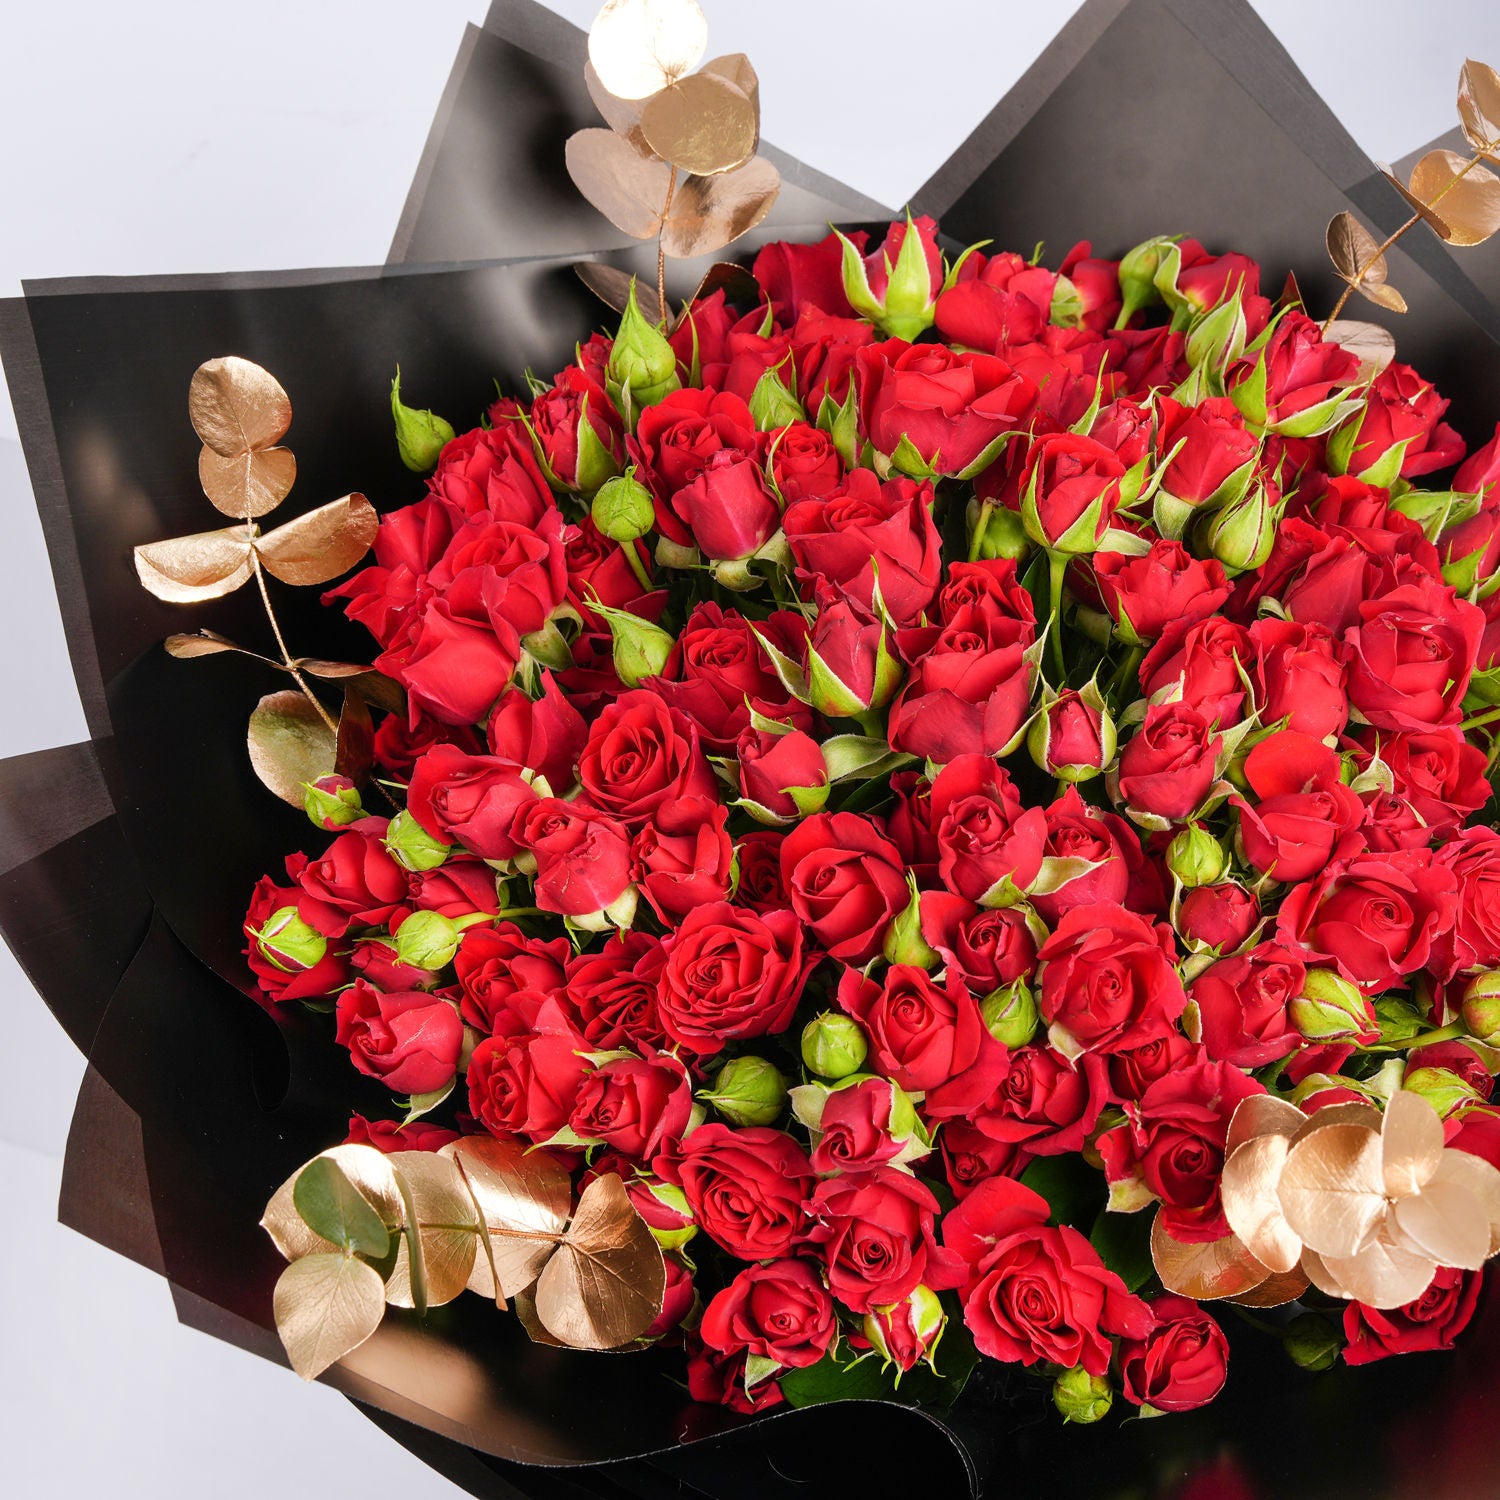 Be My Valentine Bouquet